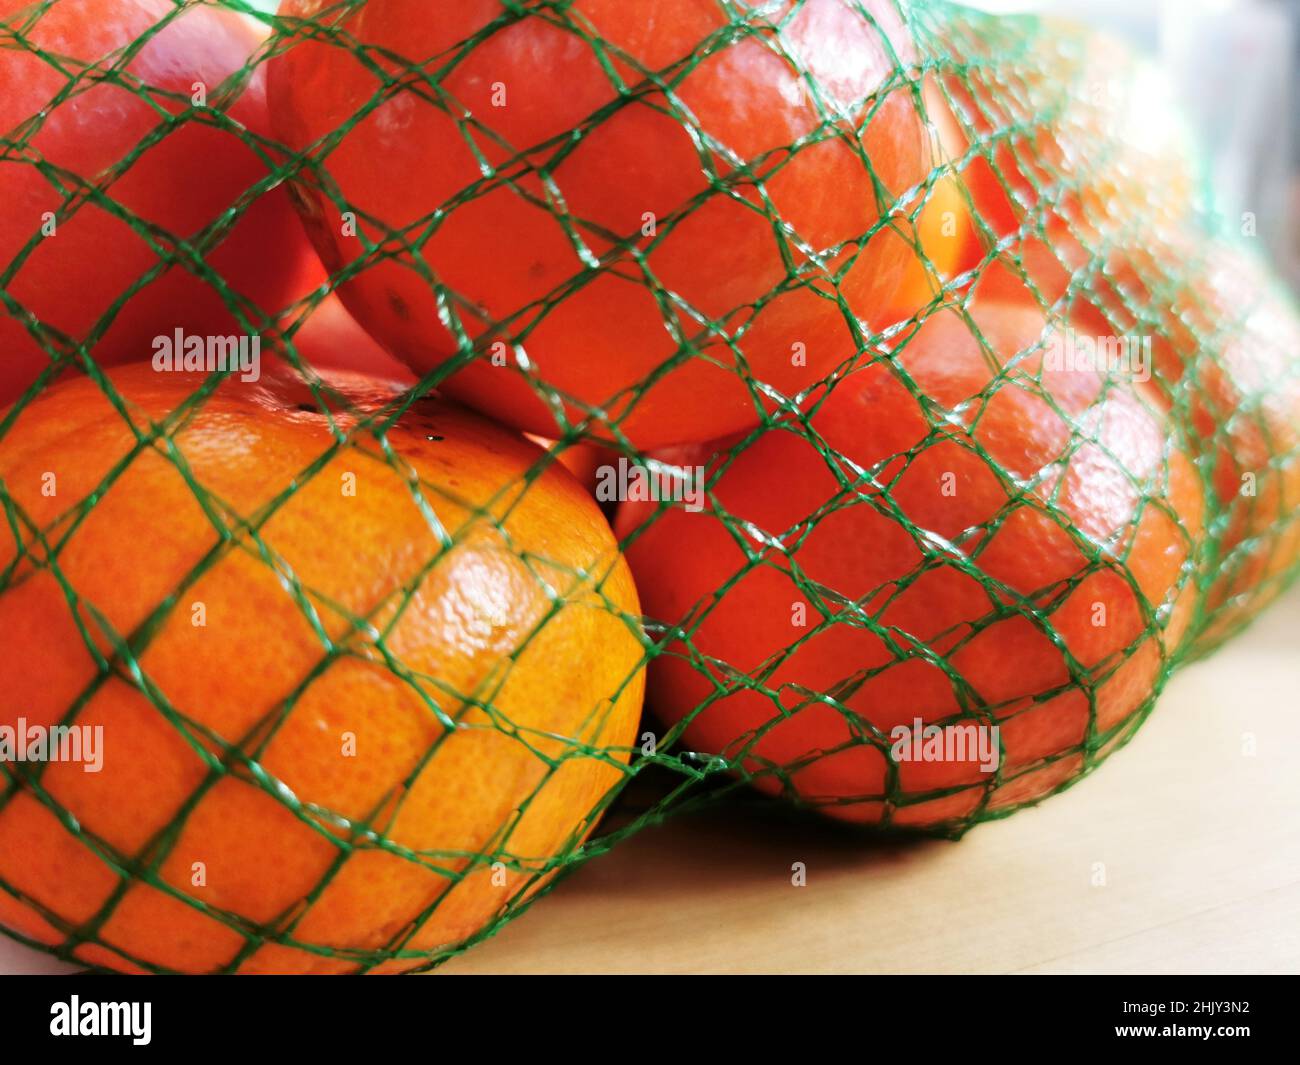 https://c8.alamy.com/comp/2HJY3N2/closeup-of-the-ripe-fresh-oranges-in-the-mesh-bag-2HJY3N2.jpg